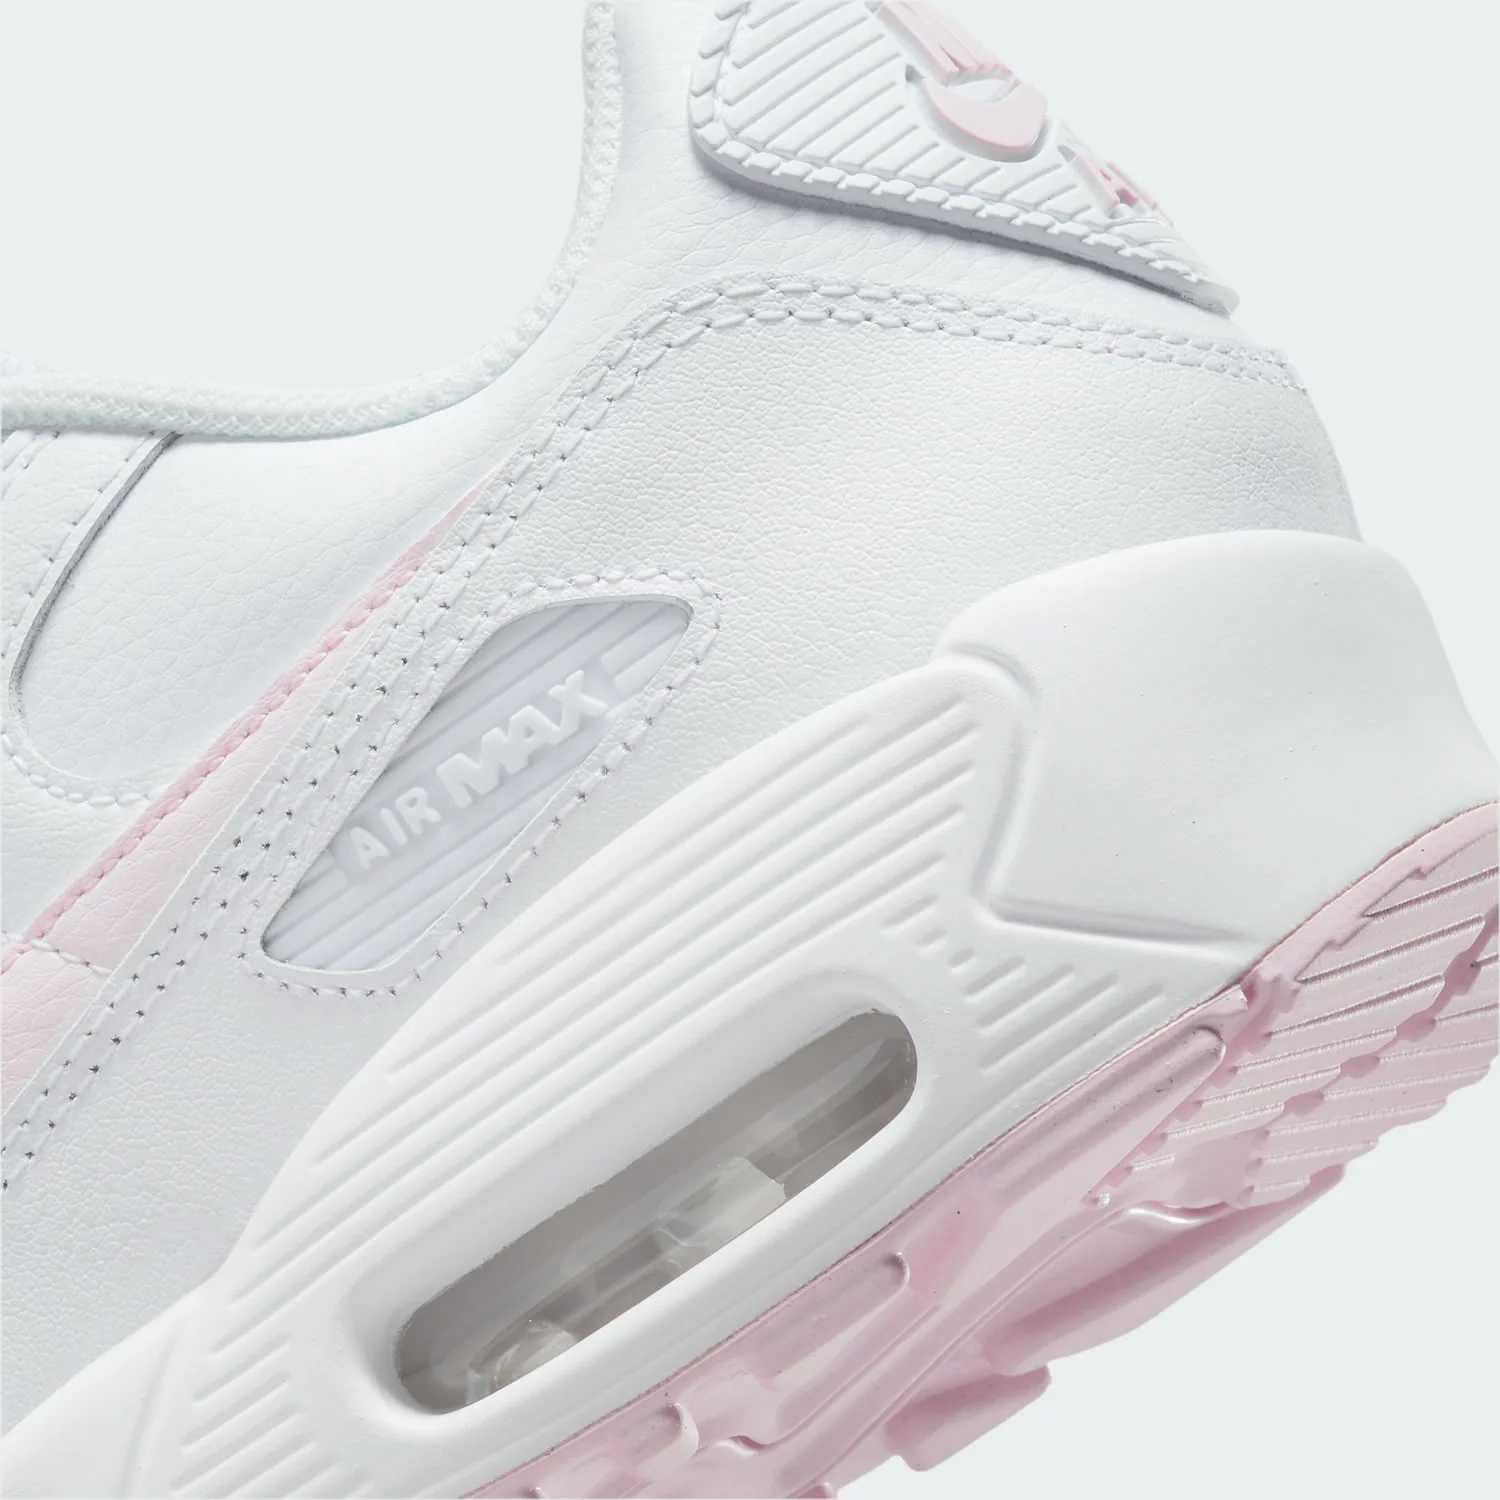 Adidasi Originali 100 % Nike Air Max 90 LTR White Pink Foam nr 36.5